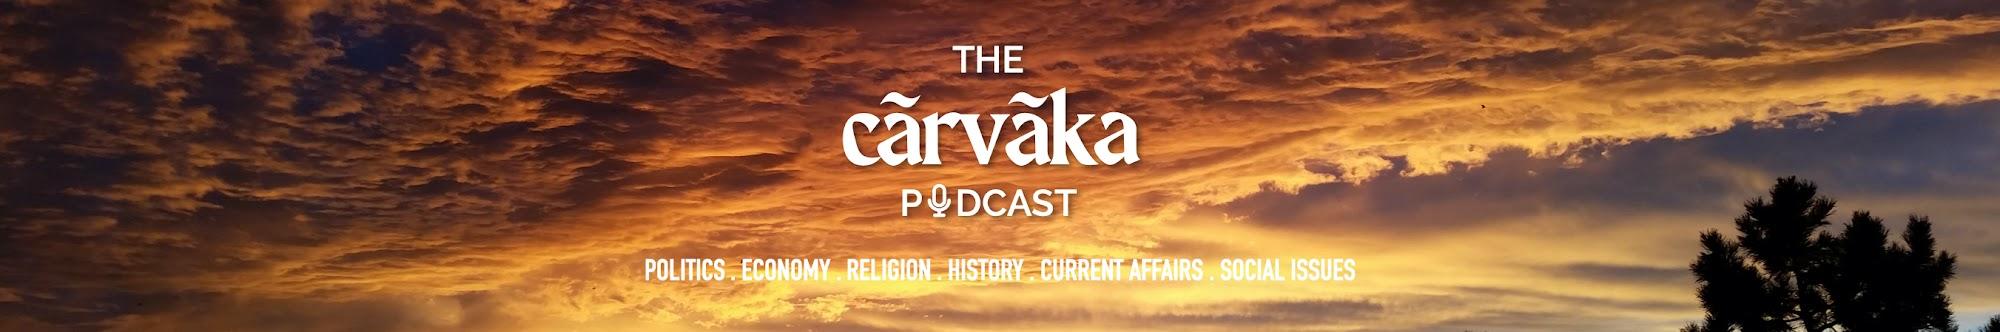 The Cārvāka Podcast